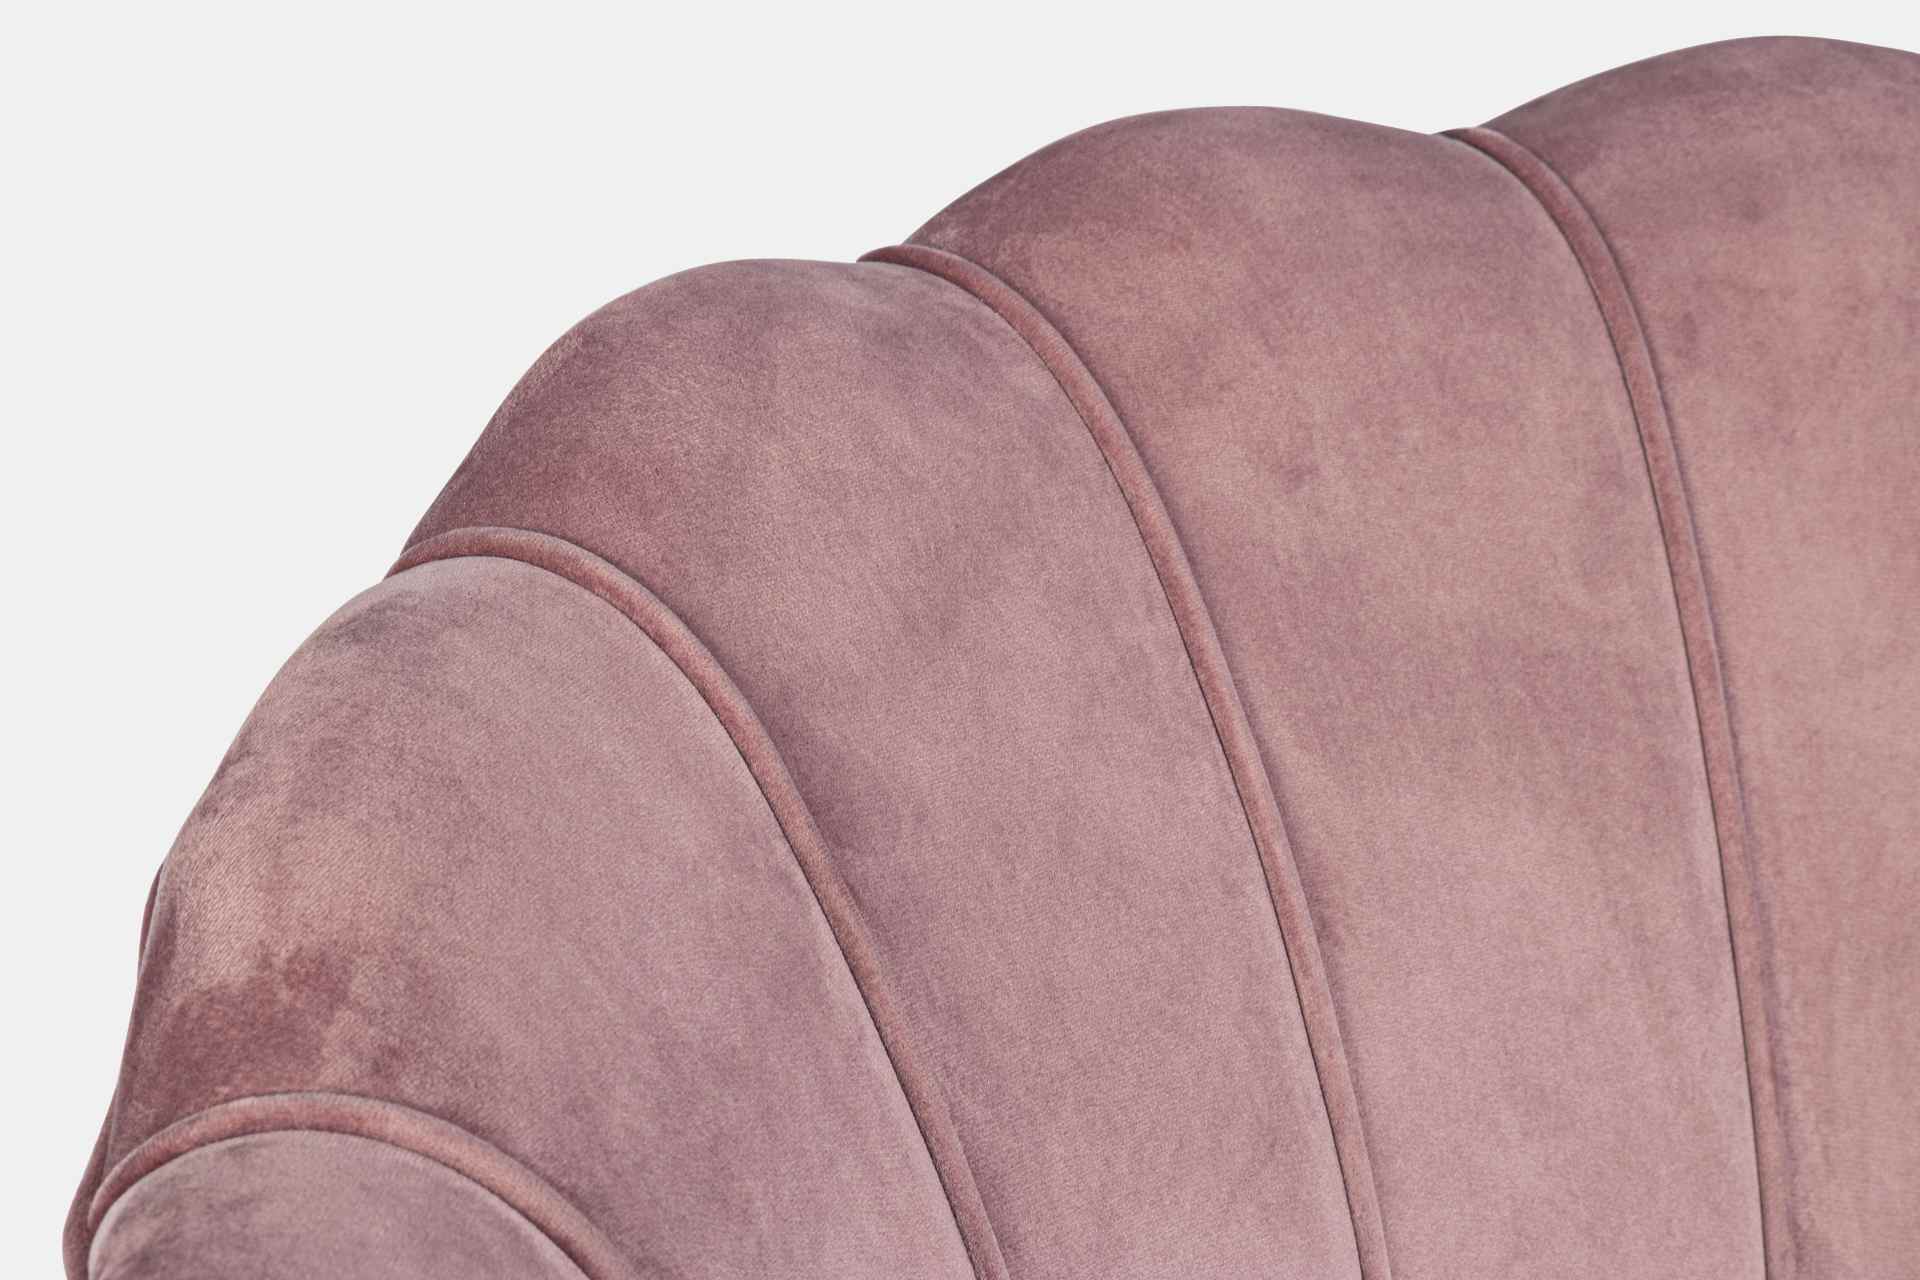 Das Sofa Giliola überzeugt mit seinem modernen Design. Gefertigt wurde es aus Stoff in Samt-Optik, welcher einen rosa Farbton besitzt. Das Gestell ist aus Metall und hat eine goldene Farbe. Das Sofa ist in der Ausführung als 2-Sitzer. Die Breite beträgt 1